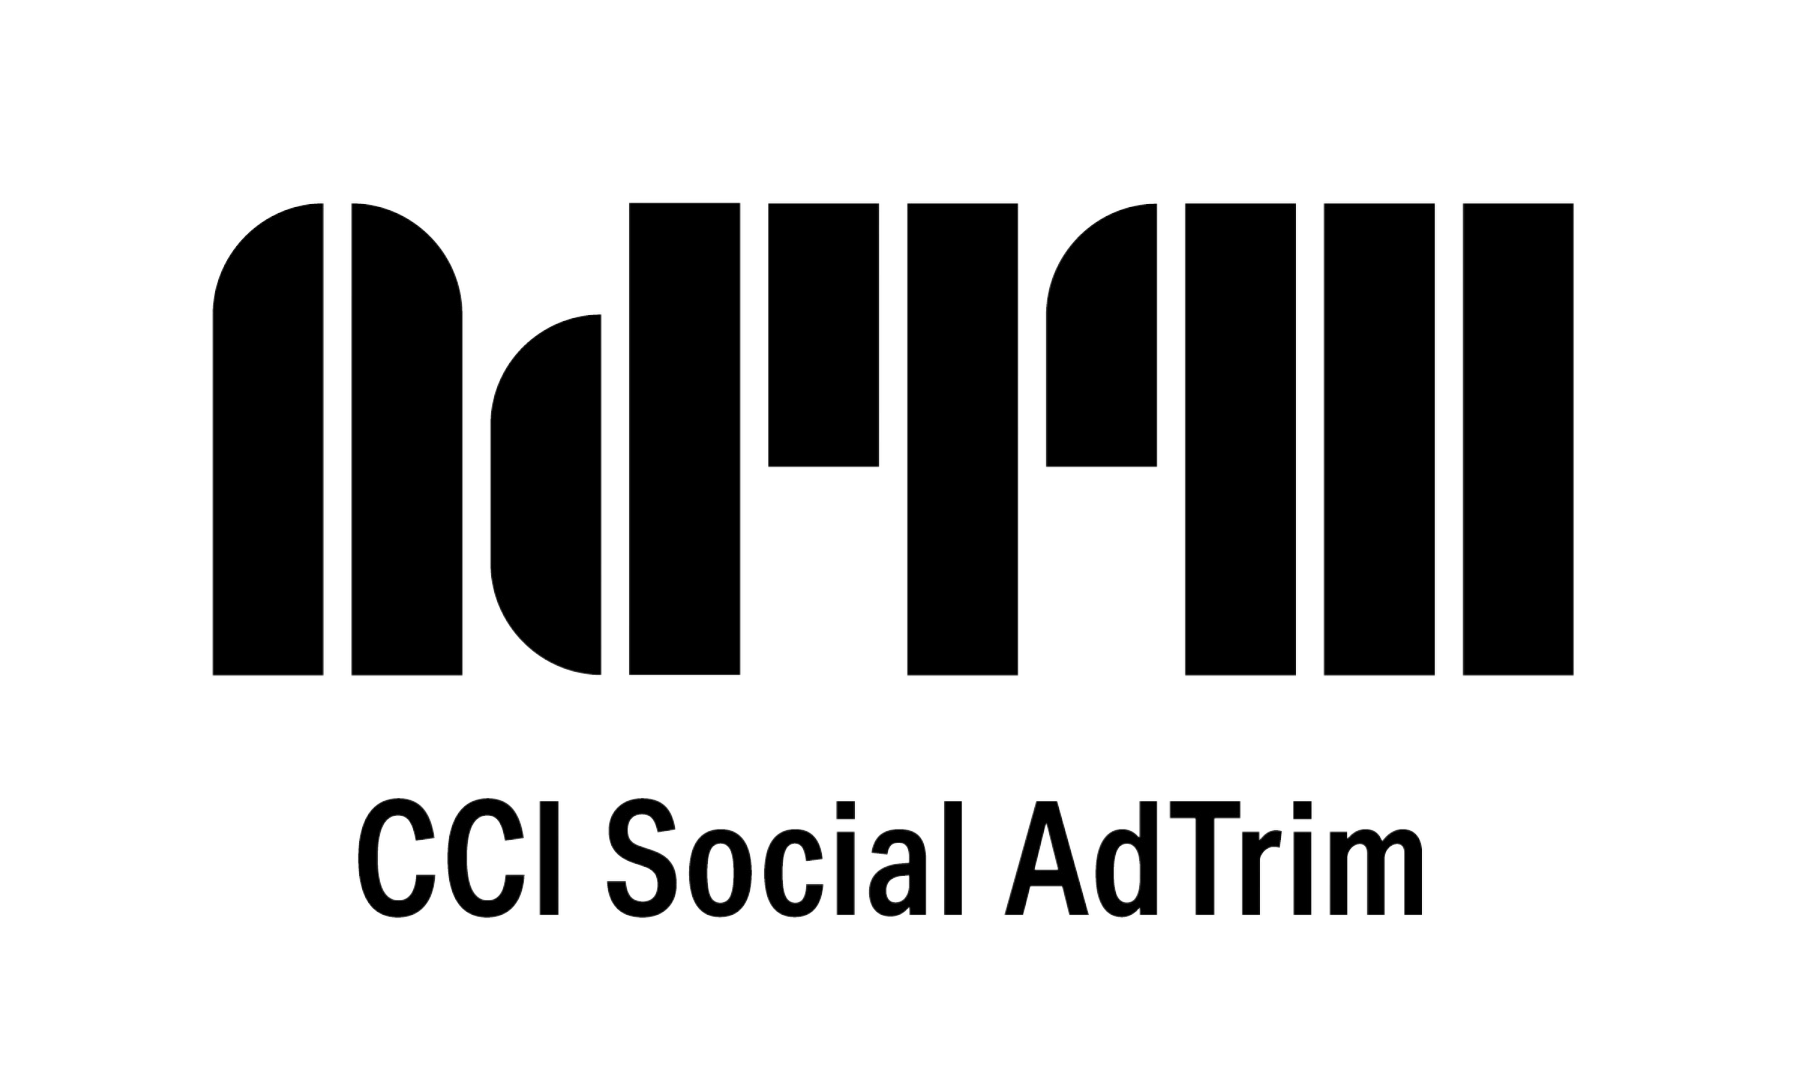 Social AdTrim logo